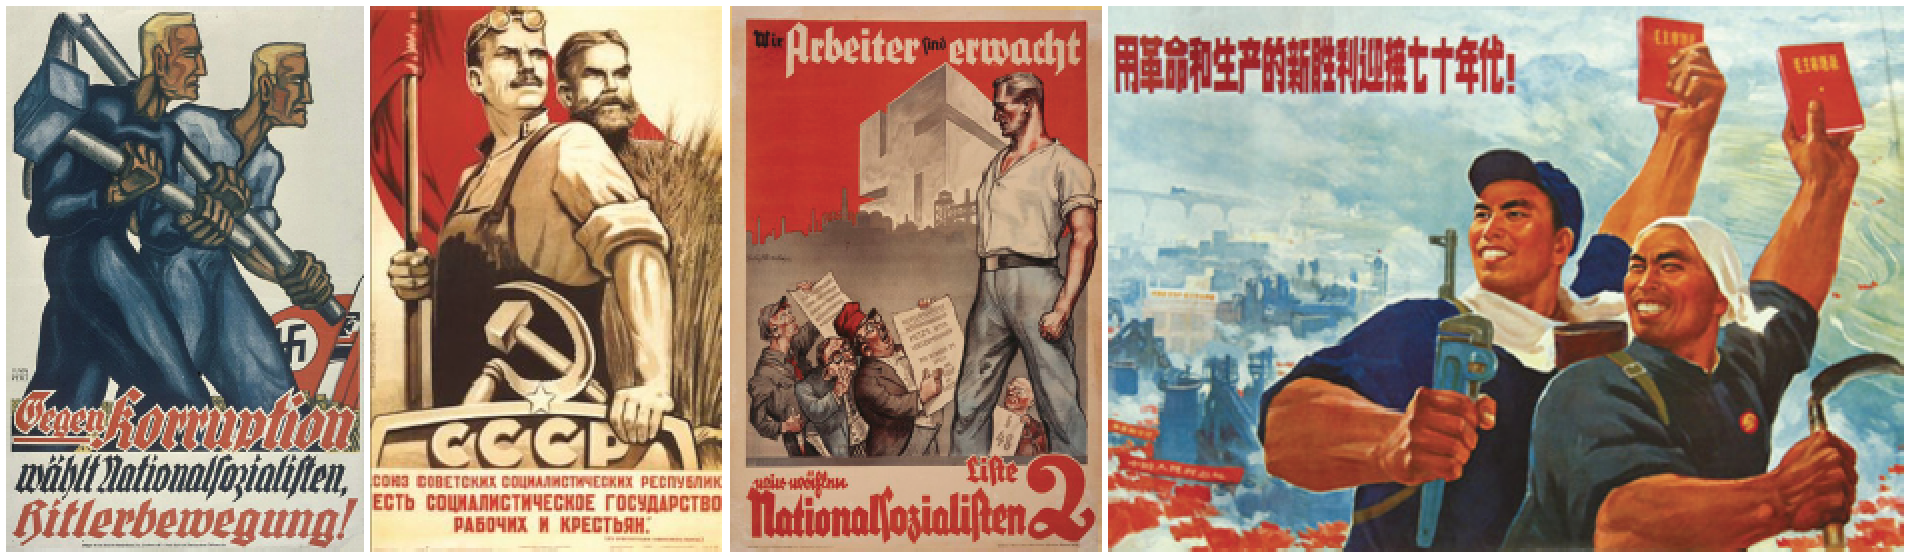 Nazi und Kommunistische Propaganda Poster, welche die stilisierte Muskelkraft des Dickdarmkanals ausdrücken: „Der Arbeiter“, das Rückgrat der von Lenin, Hitler, und Mao angeführten „proletarischen Revolutionen“